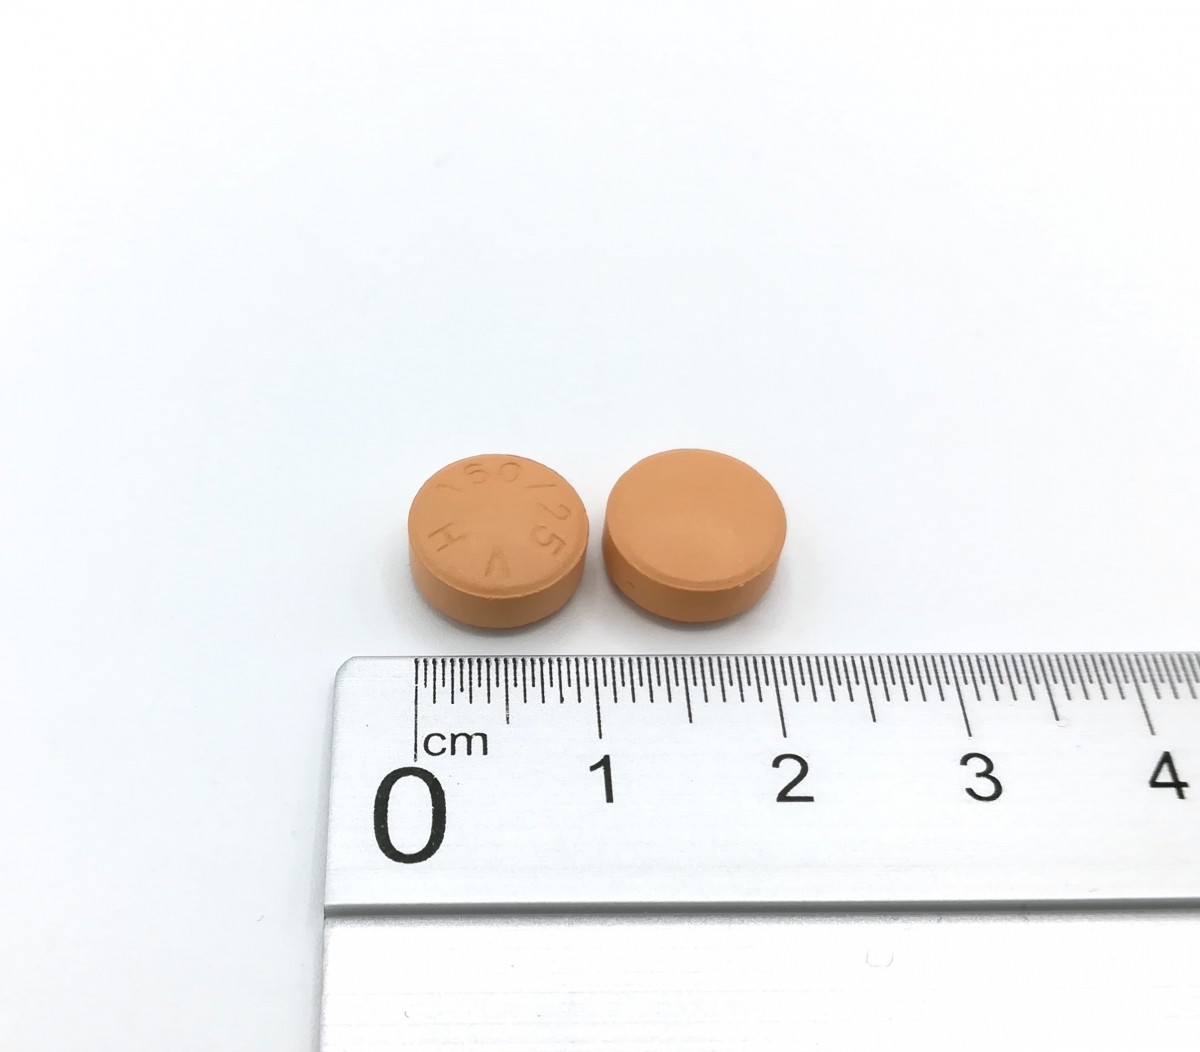 VALSARTAN/HIDROCLOROTIAZIDA NORMON 160 mg/25 mg COMPRIMIDOS RECUBIERTOS CON PELICULA EFG, 28 comprimidos fotografía de la forma farmacéutica.